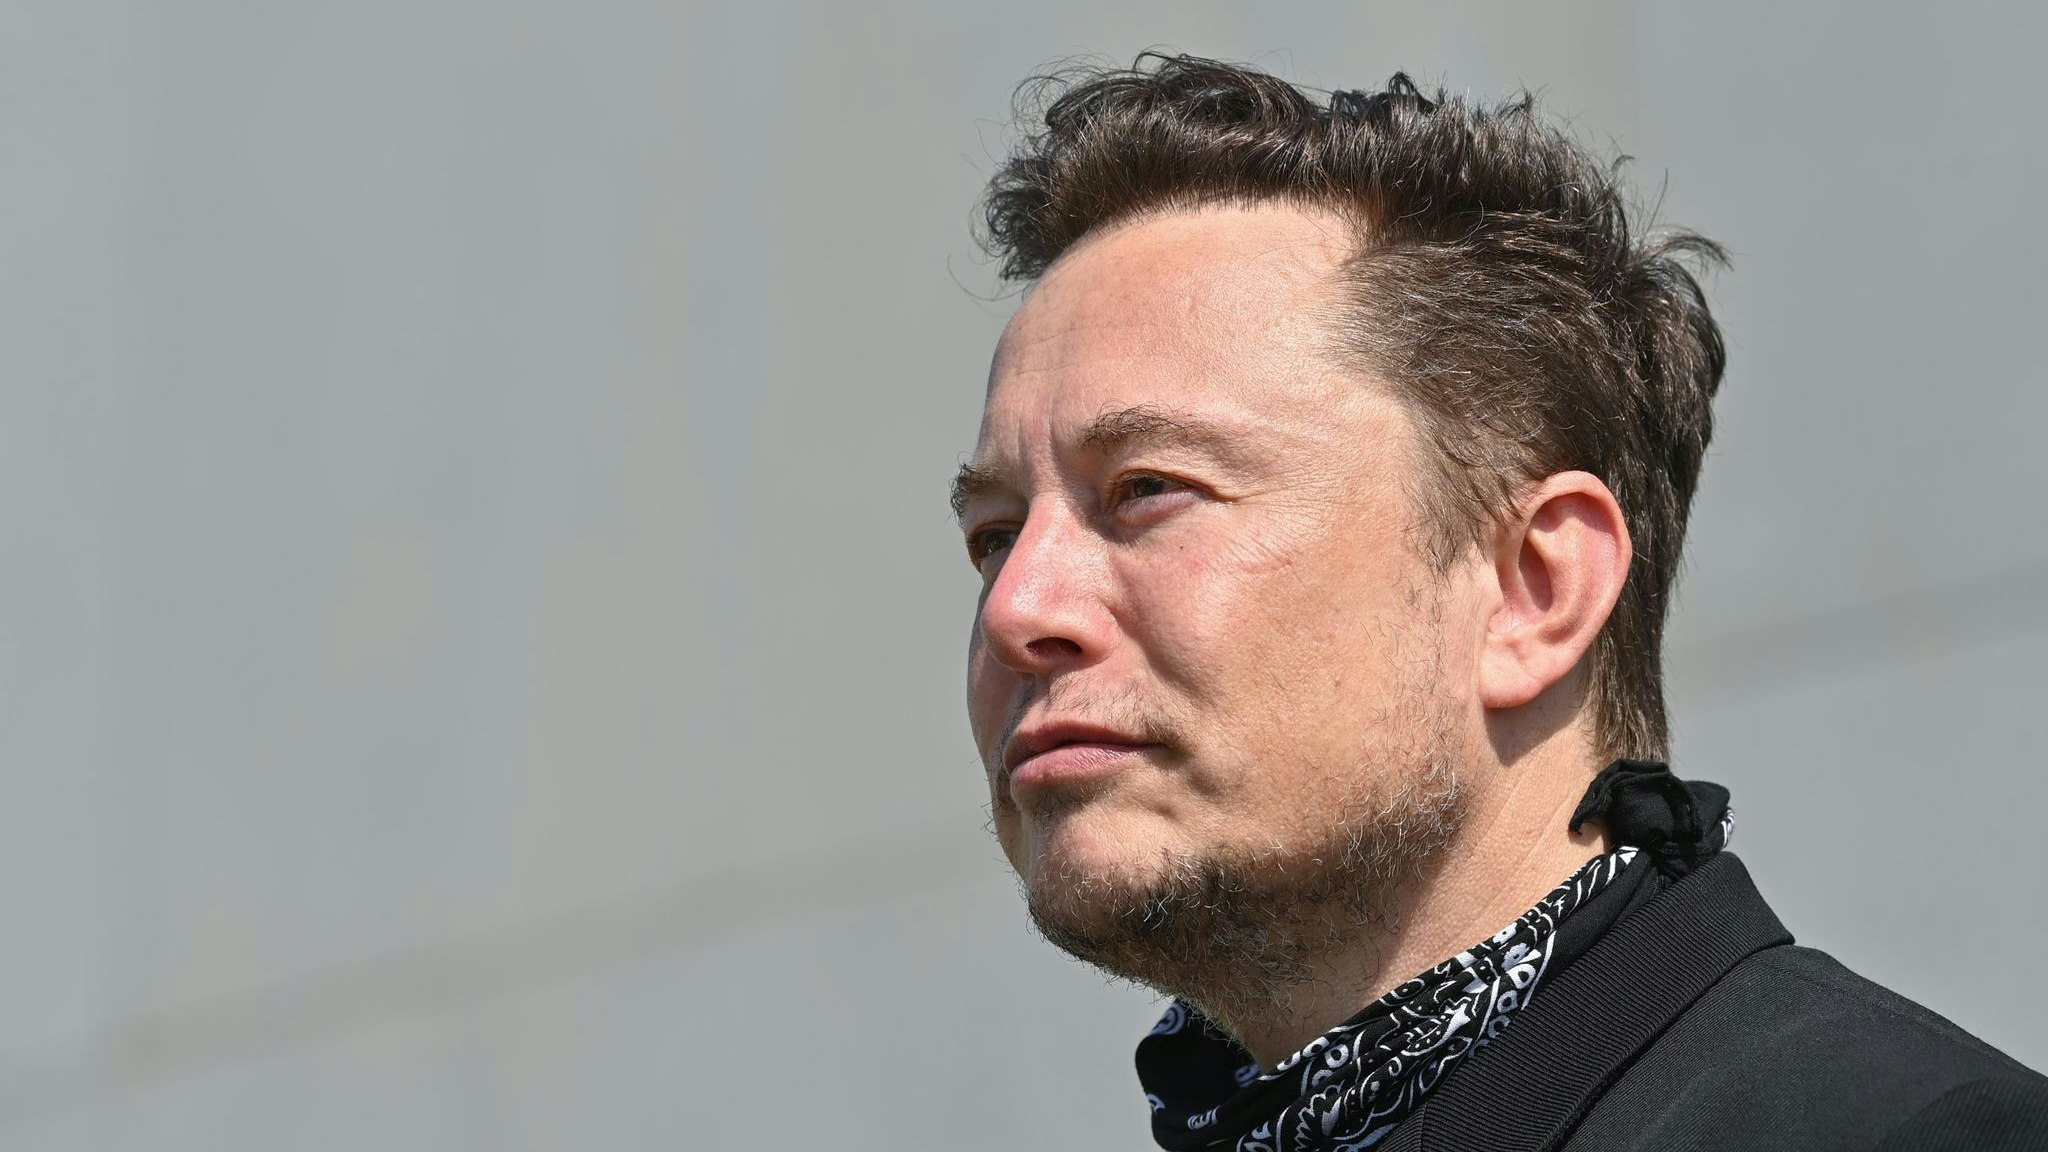 Der Tech-Milliardär Elon Musk baut den Online-Dienst Twitter nach seiner Übernahme um. Foto: dpa/Pleul